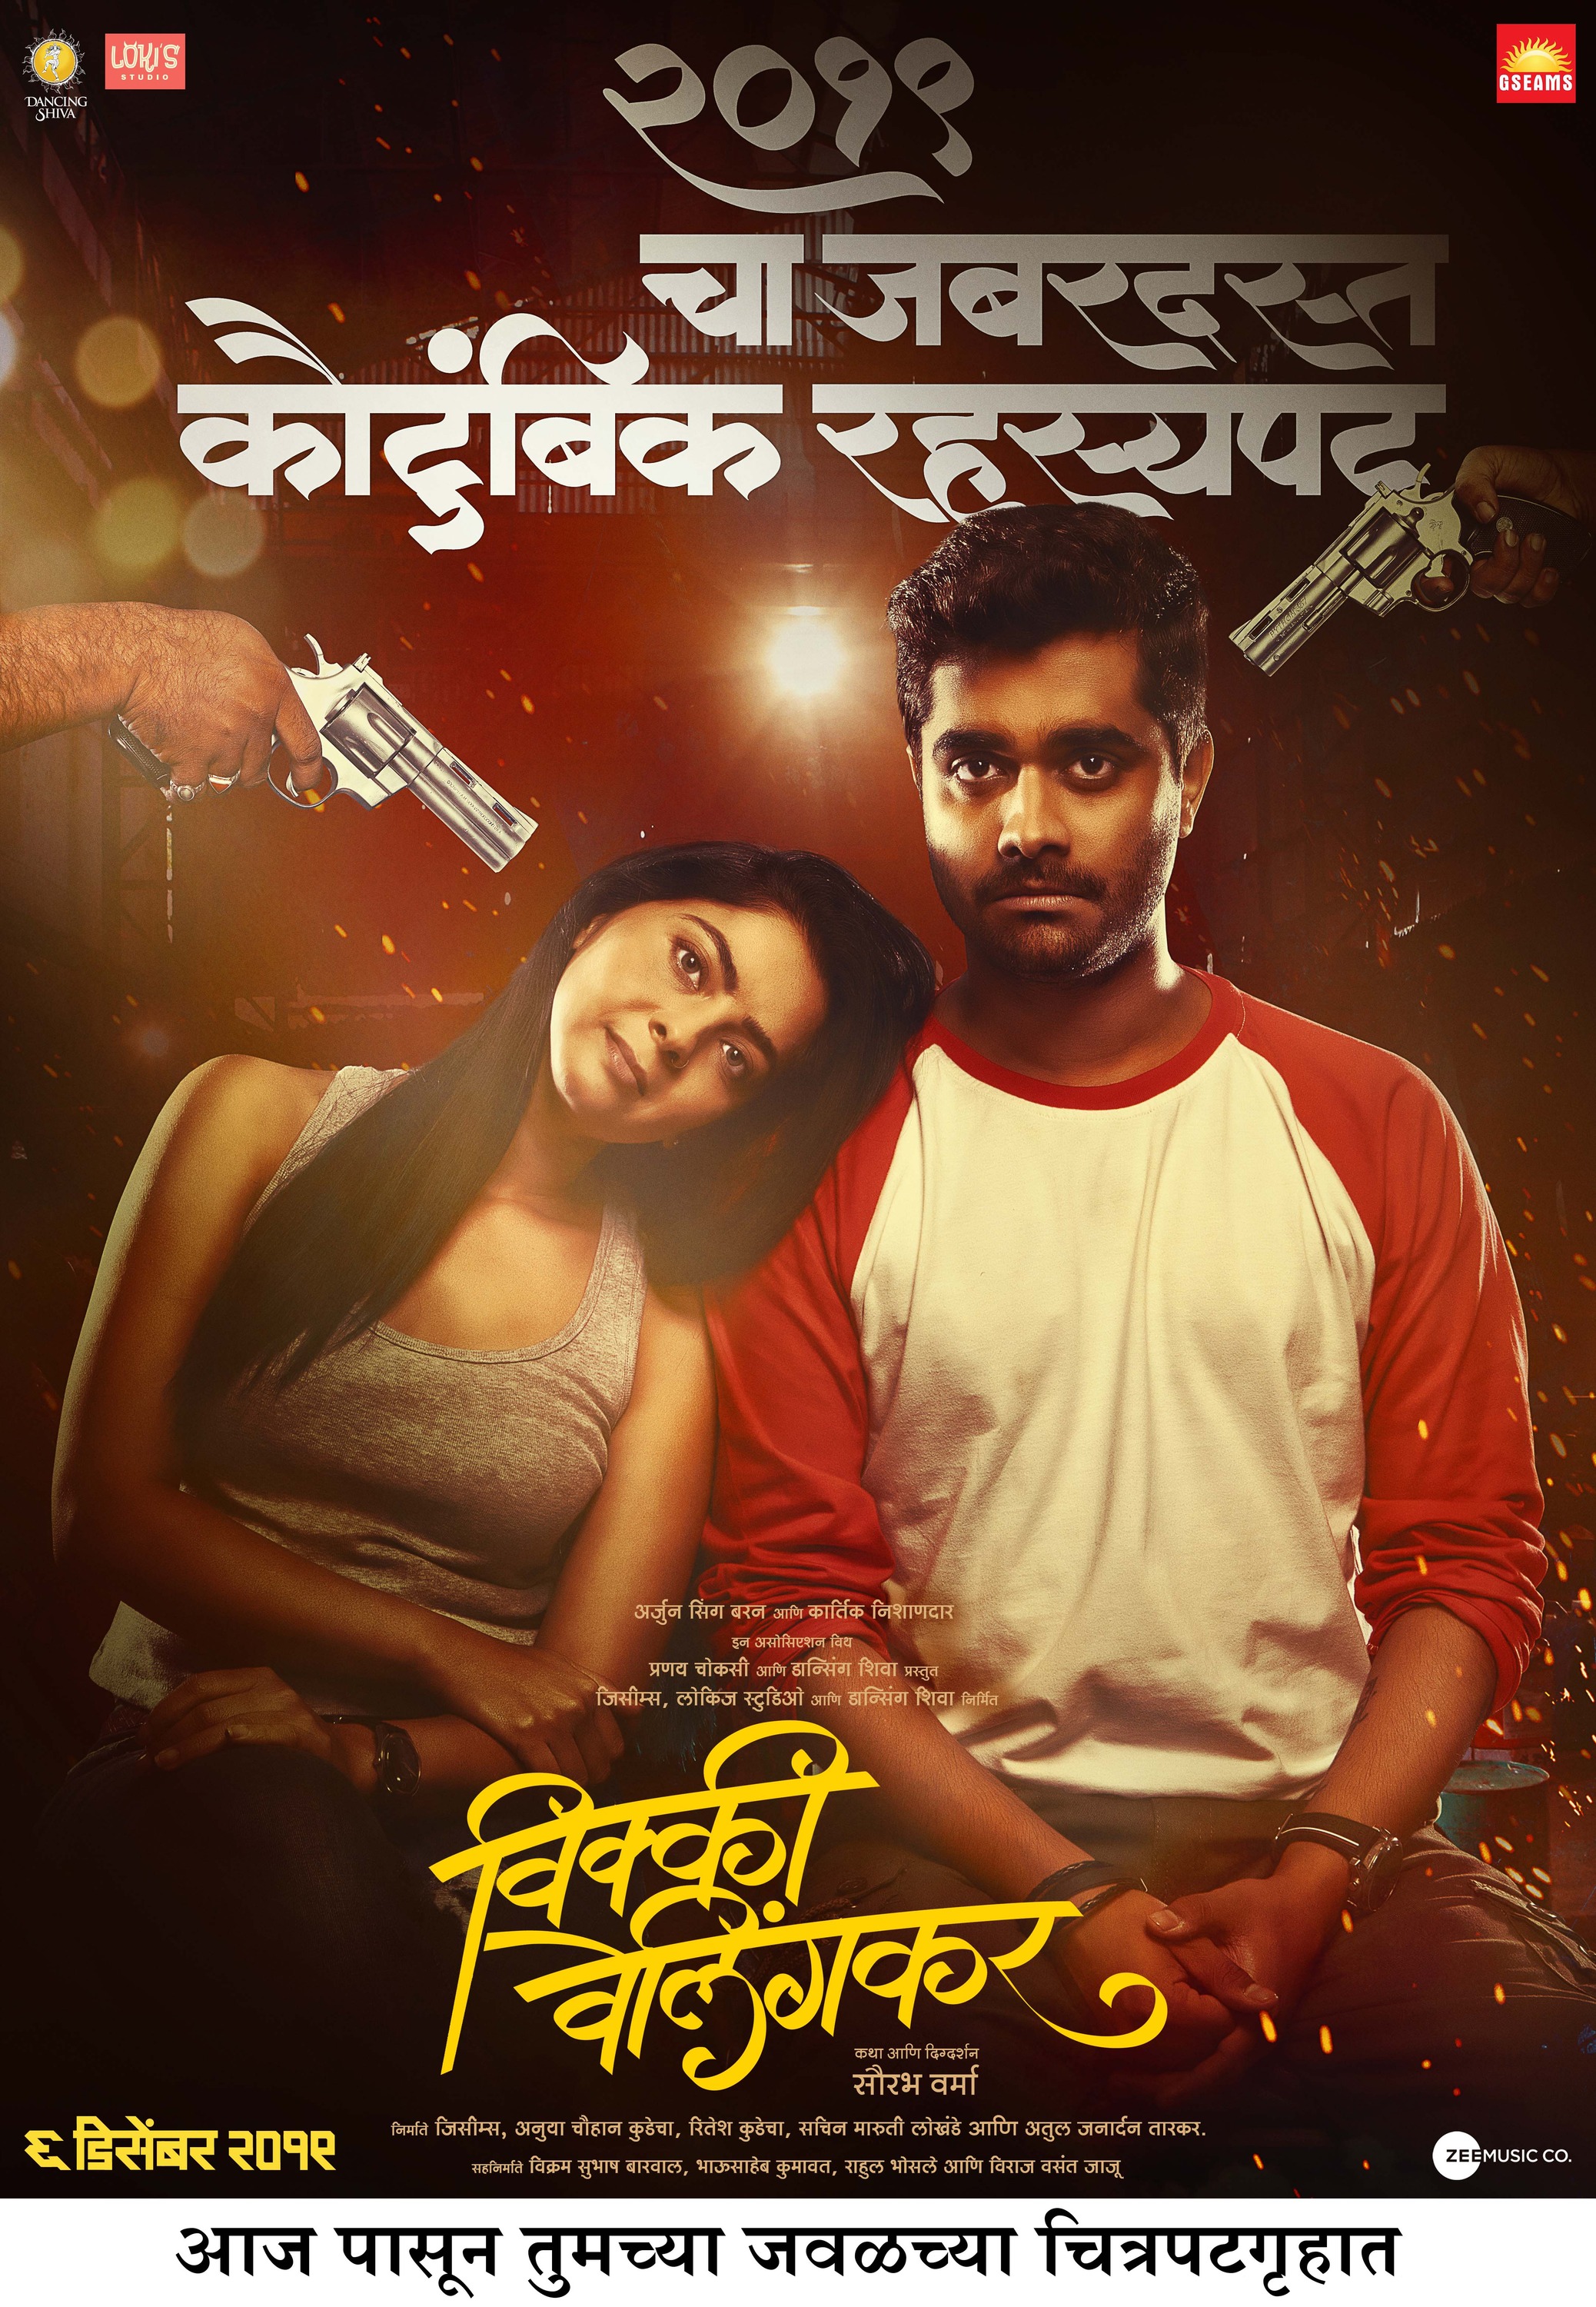 Mega Sized Movie Poster Image for Vicky Velingkar (#5 of 9)